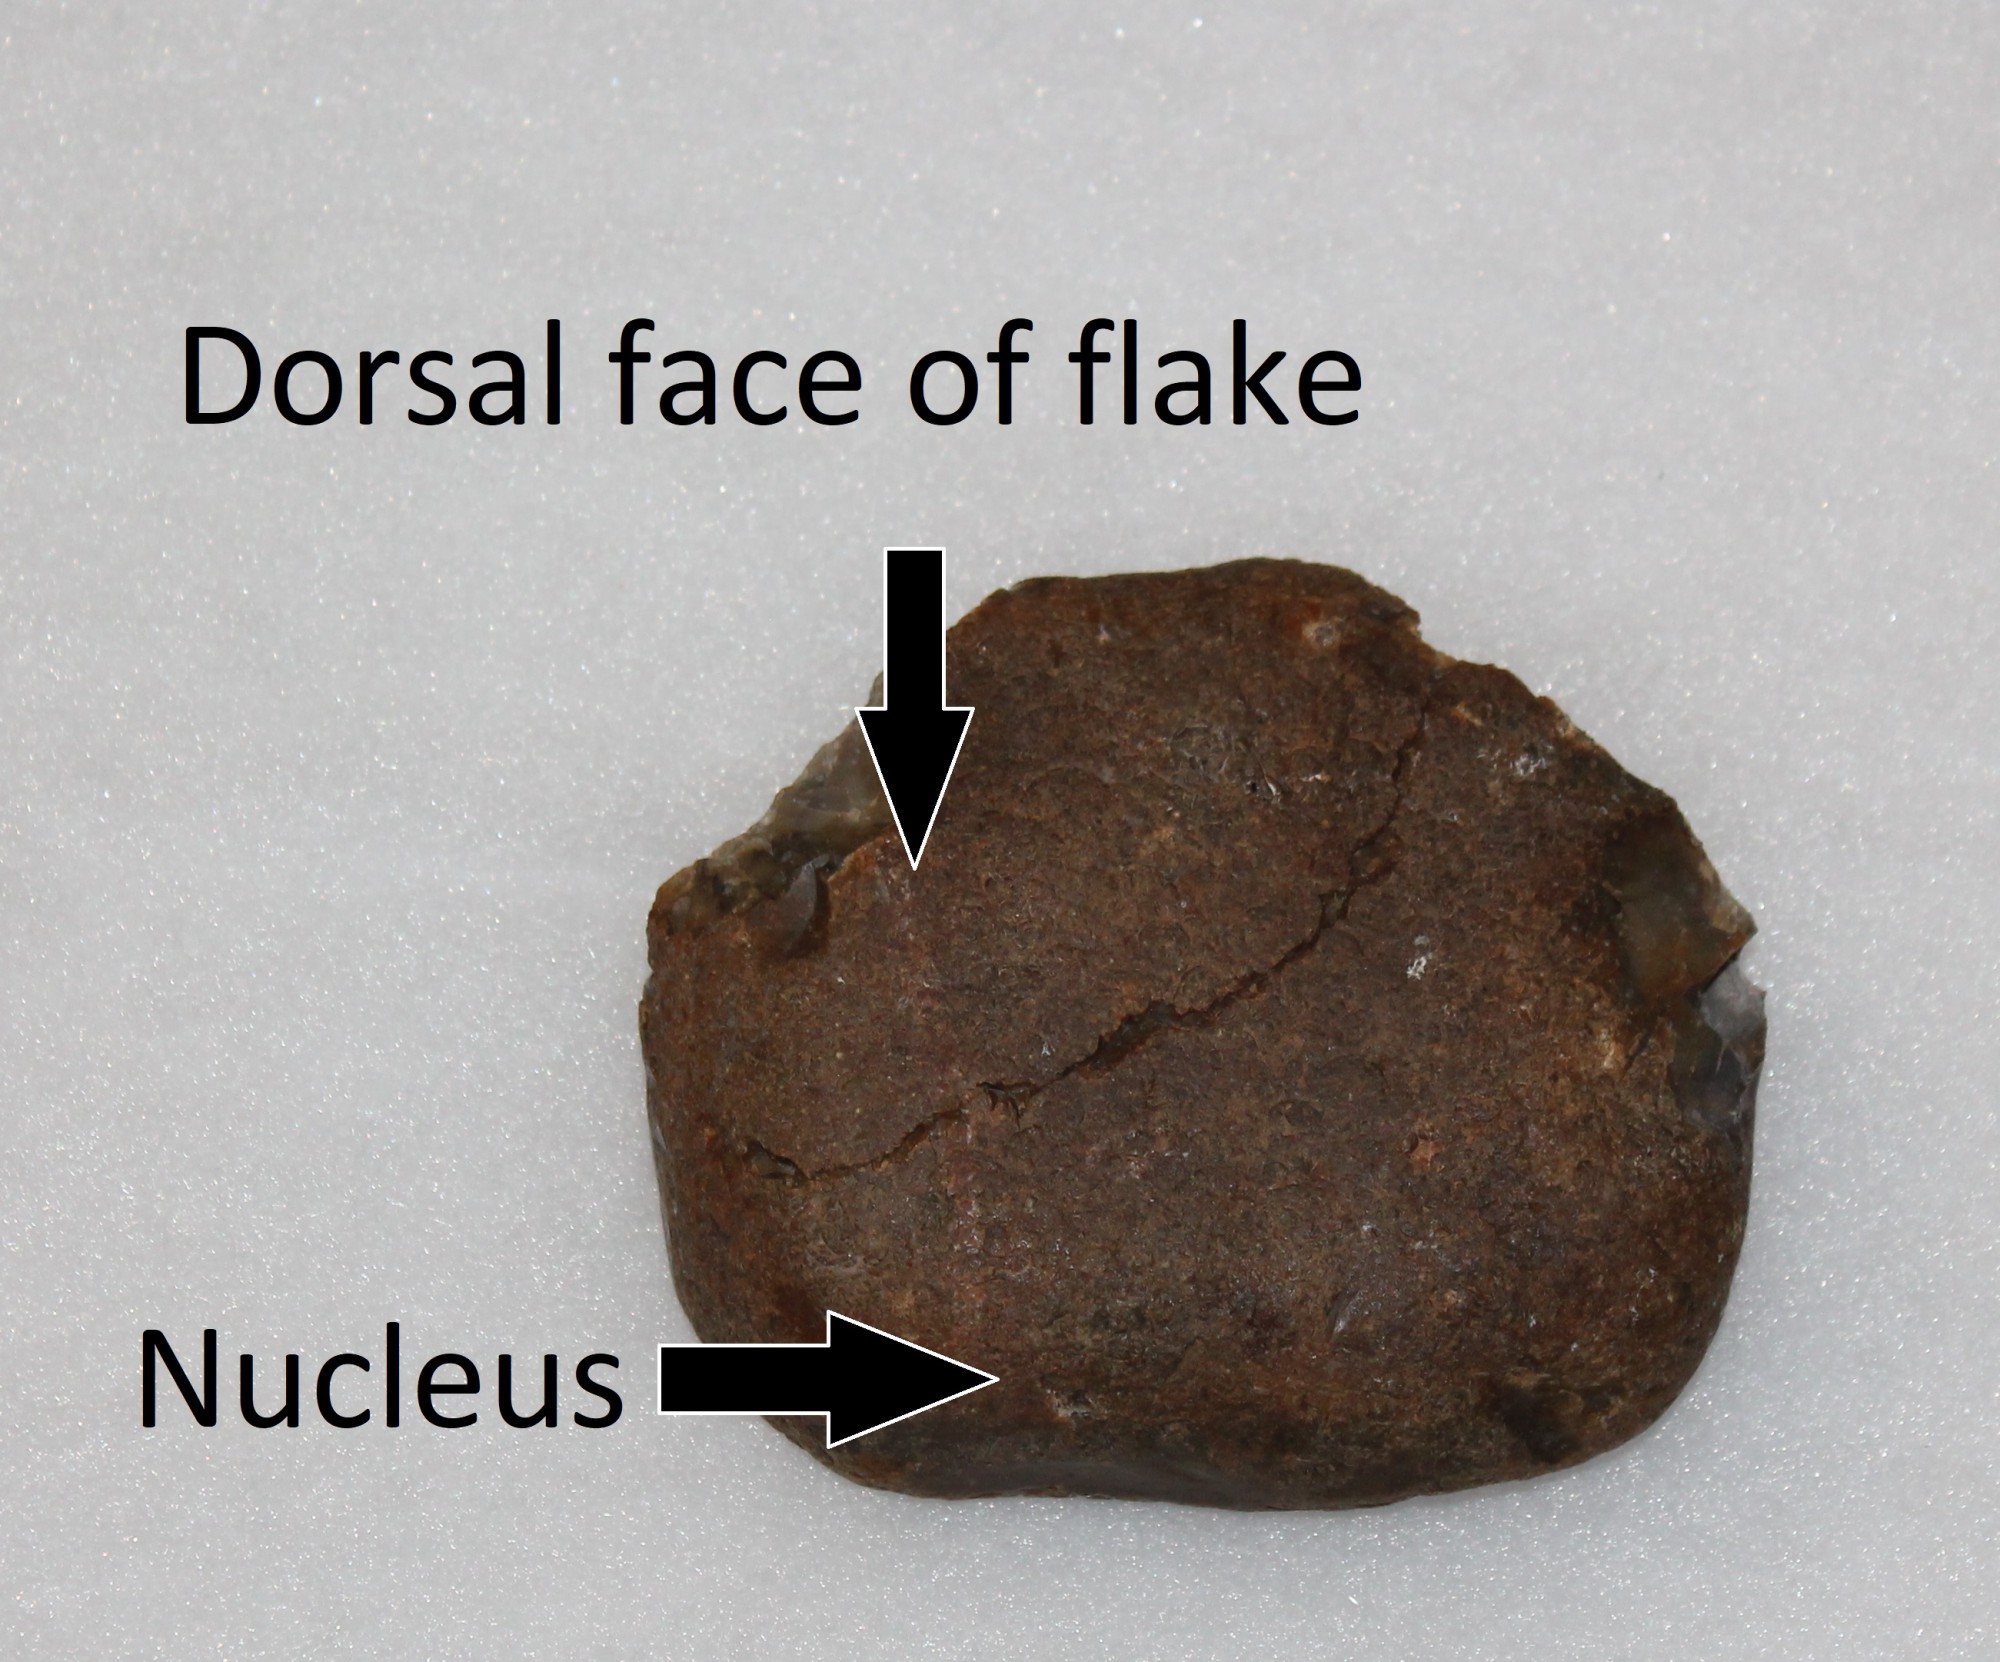 Dorsal face of flake